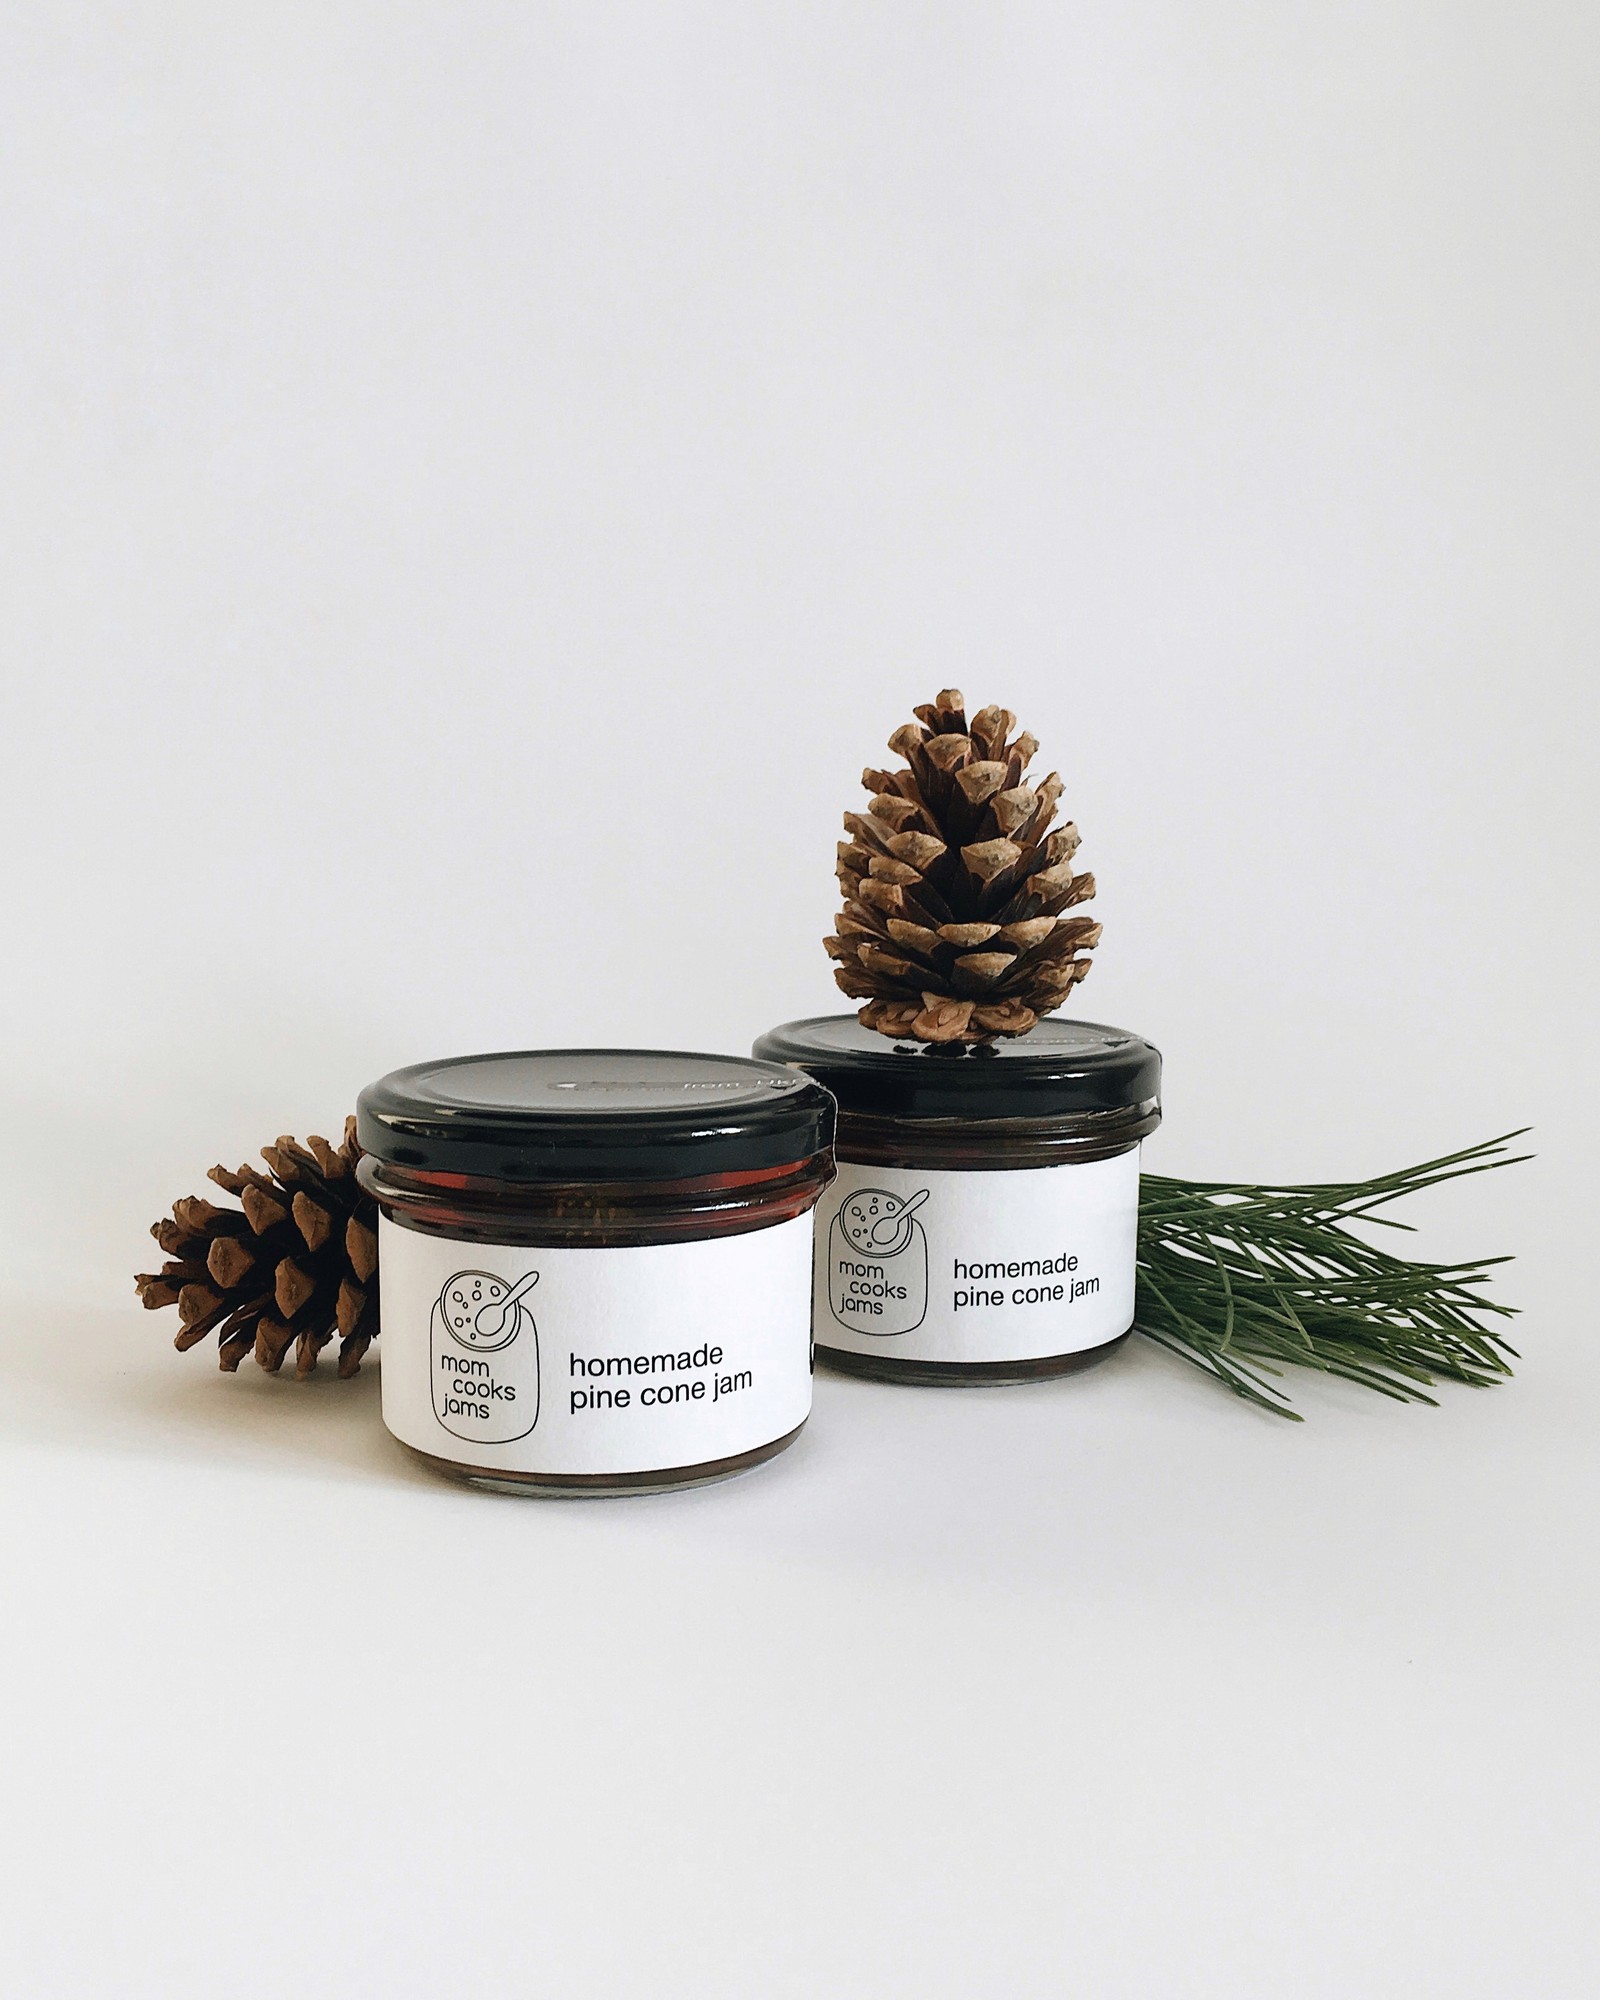 Handmade natural pine cone jam from Ukraine 220g